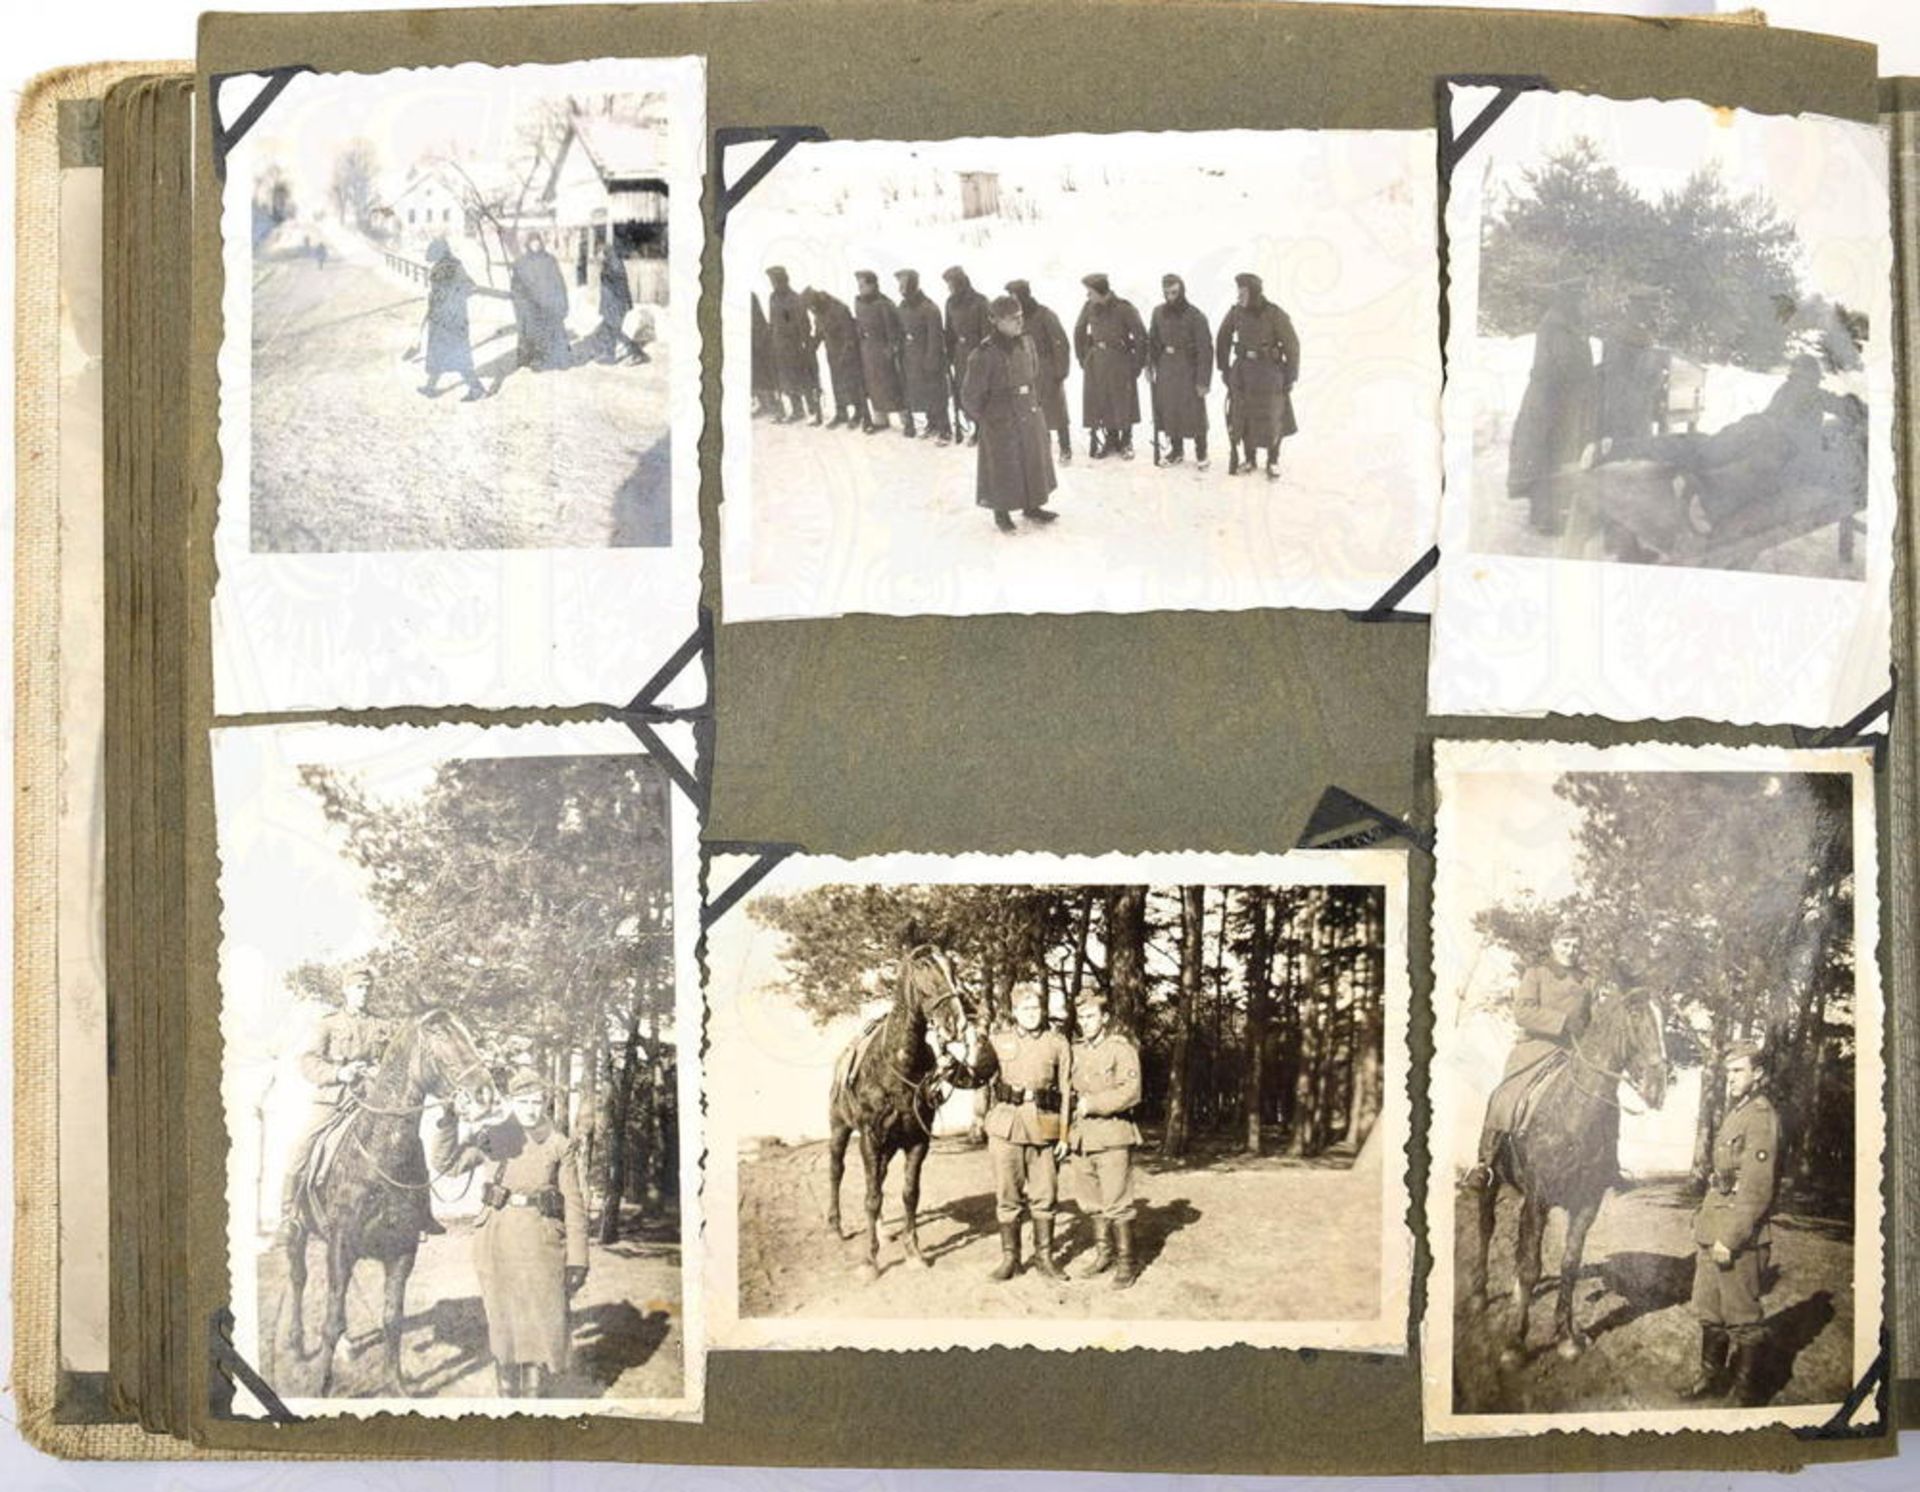 FOTOALBUM GEFREITER DES HEERES aus Graz/Ostmark, mit 140 Fotos u. 17 AK, 1939- 1941, Westfeldzug, ze - Bild 3 aus 4